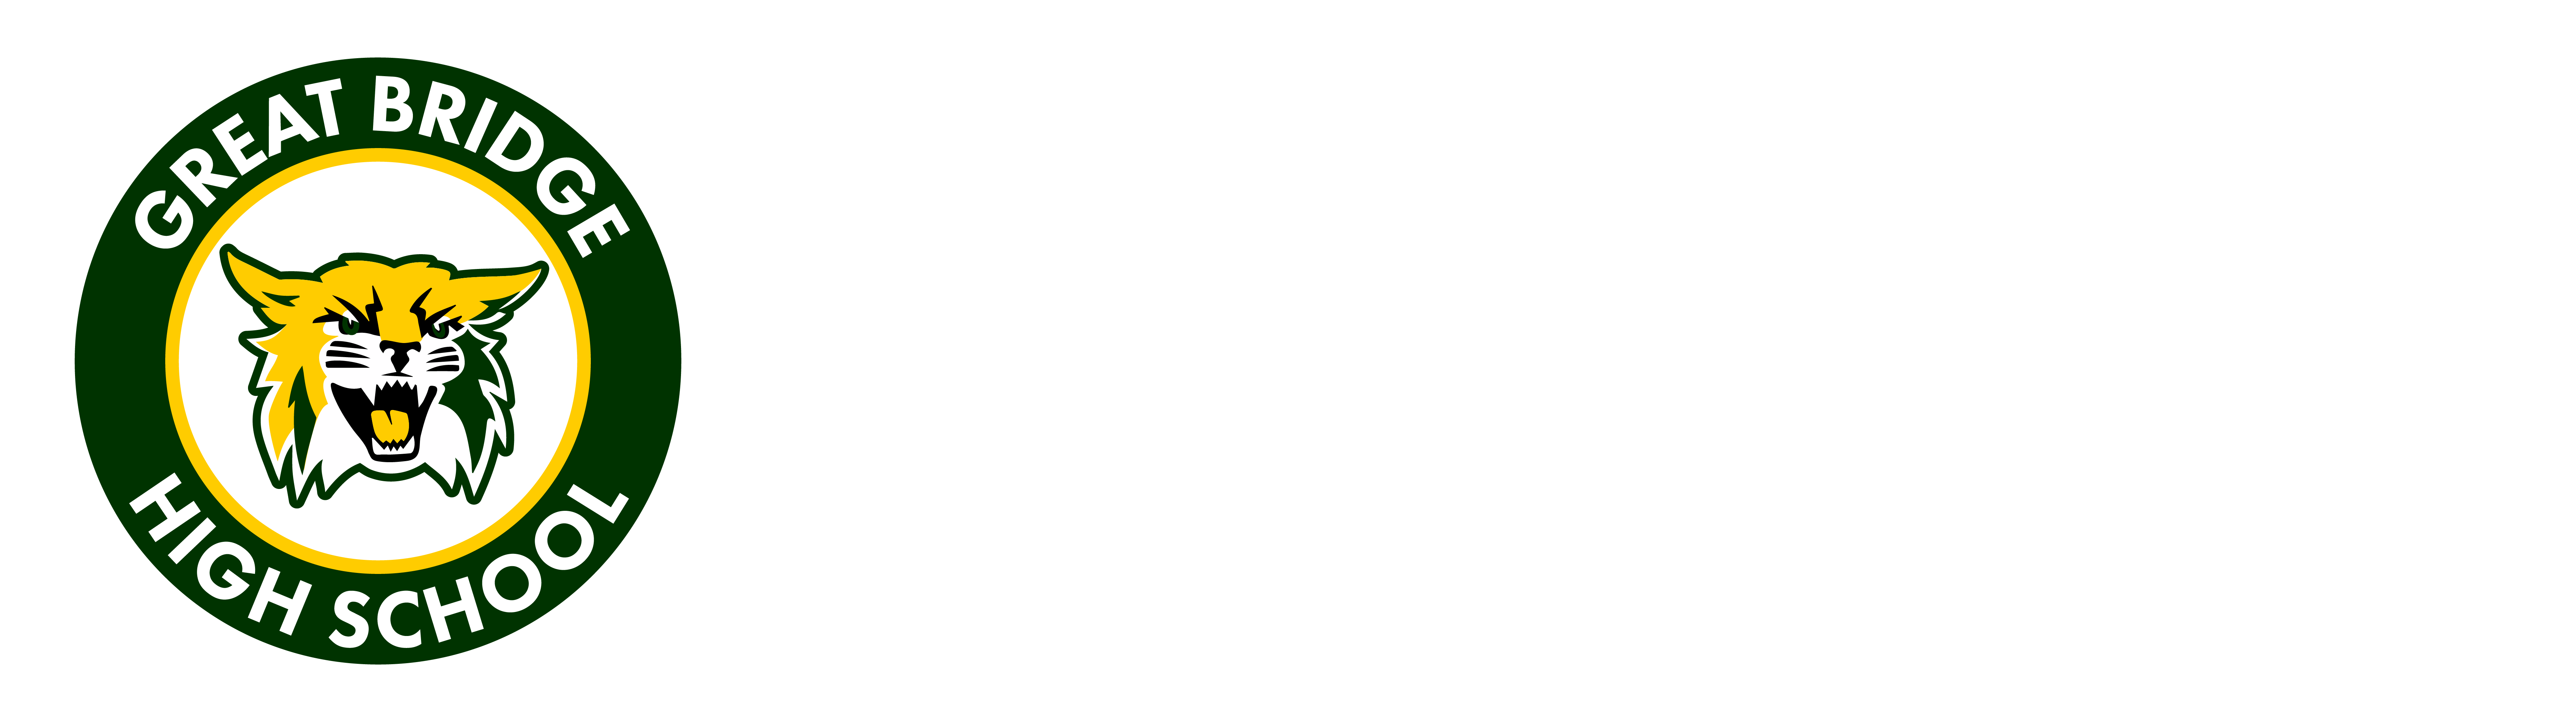 Great Bridge High School